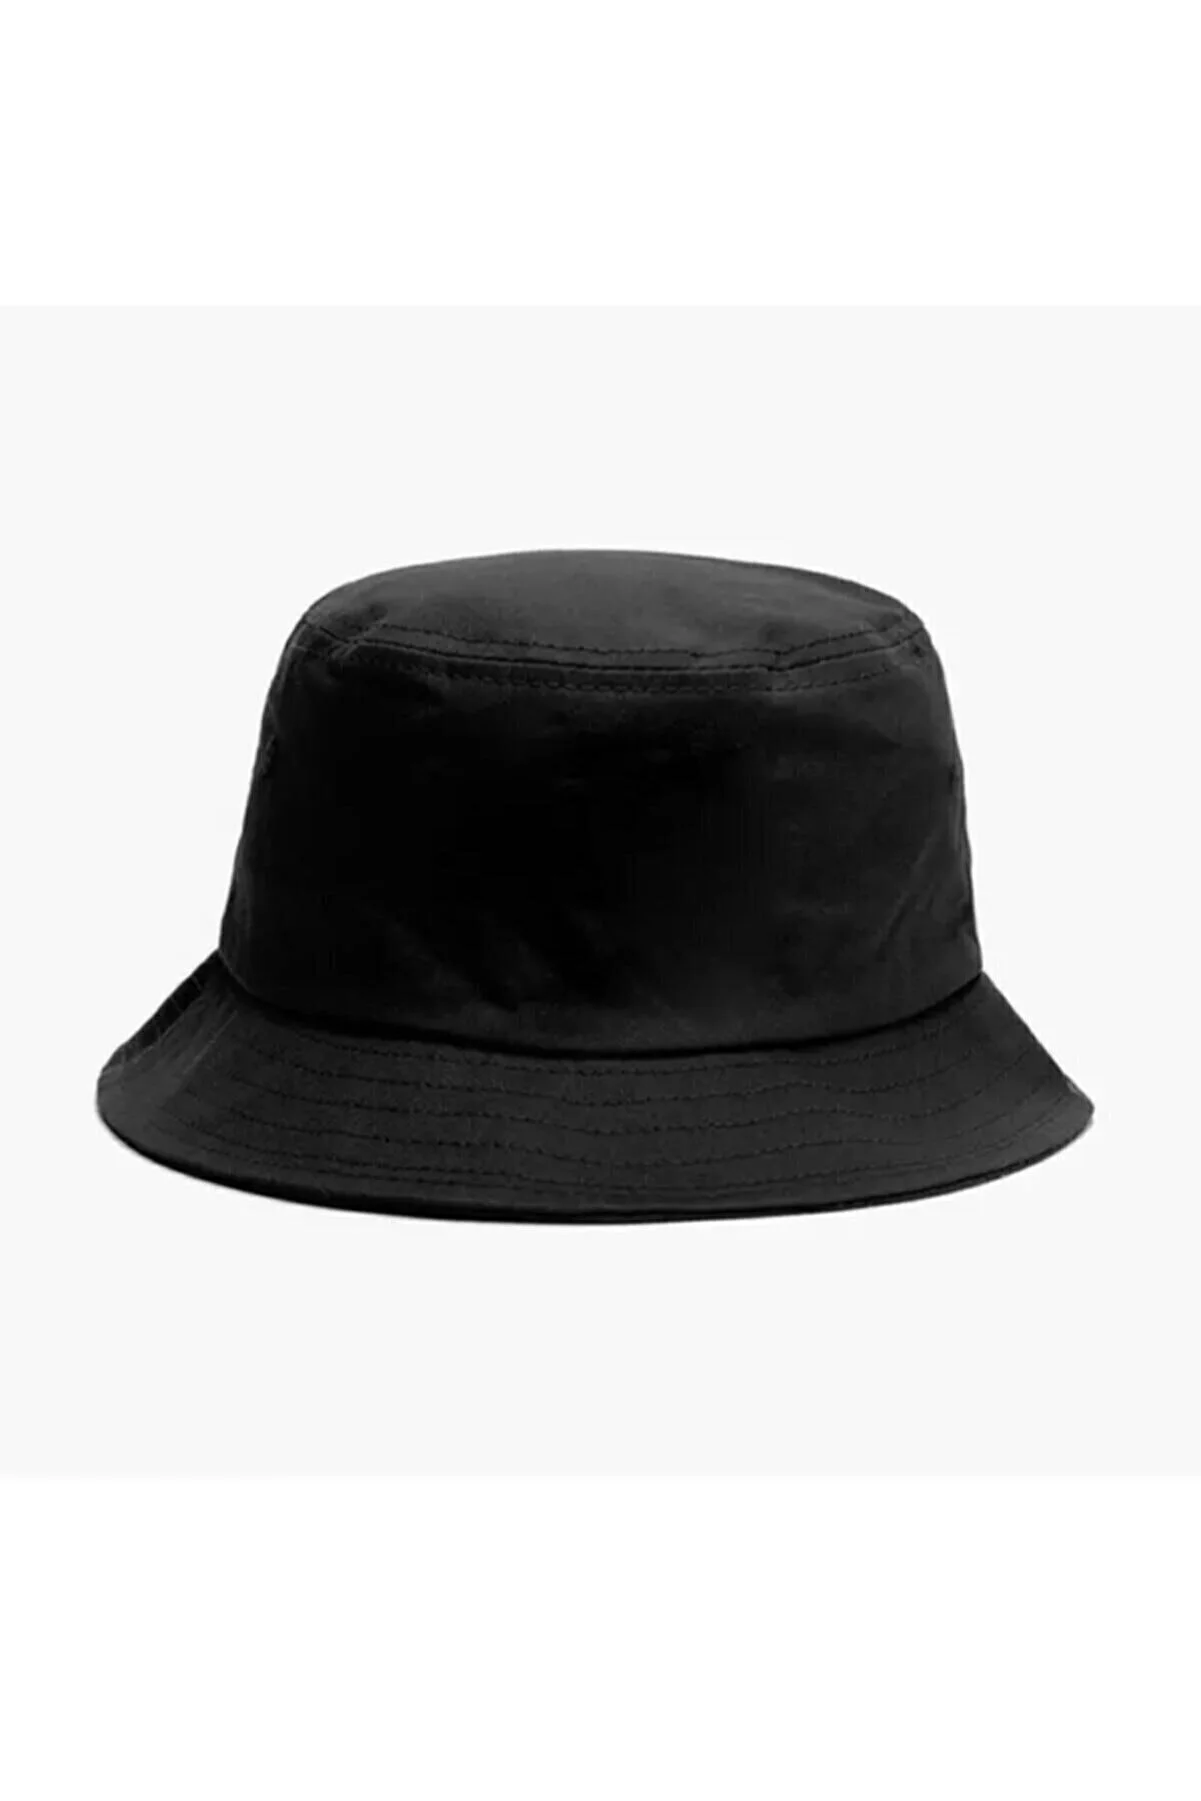 Düz Siyah Kova Şapka Balıkçı Şapka